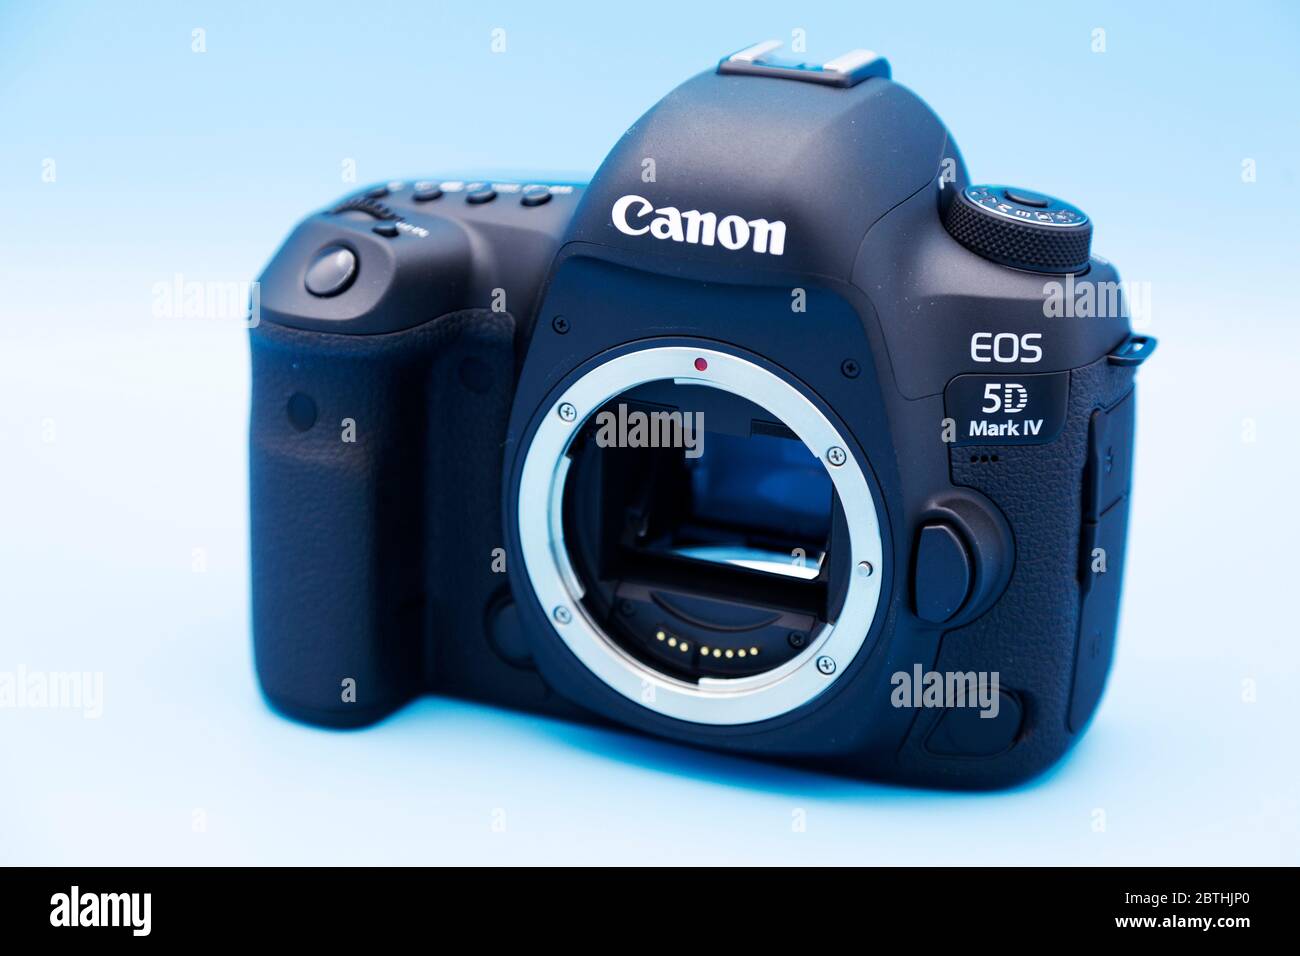 Corpo della fotocamera Canon 5D Mark IV, una fotocamera reflex digitale full-frame a obiettivo singolo (D-SLR). Foto Stock